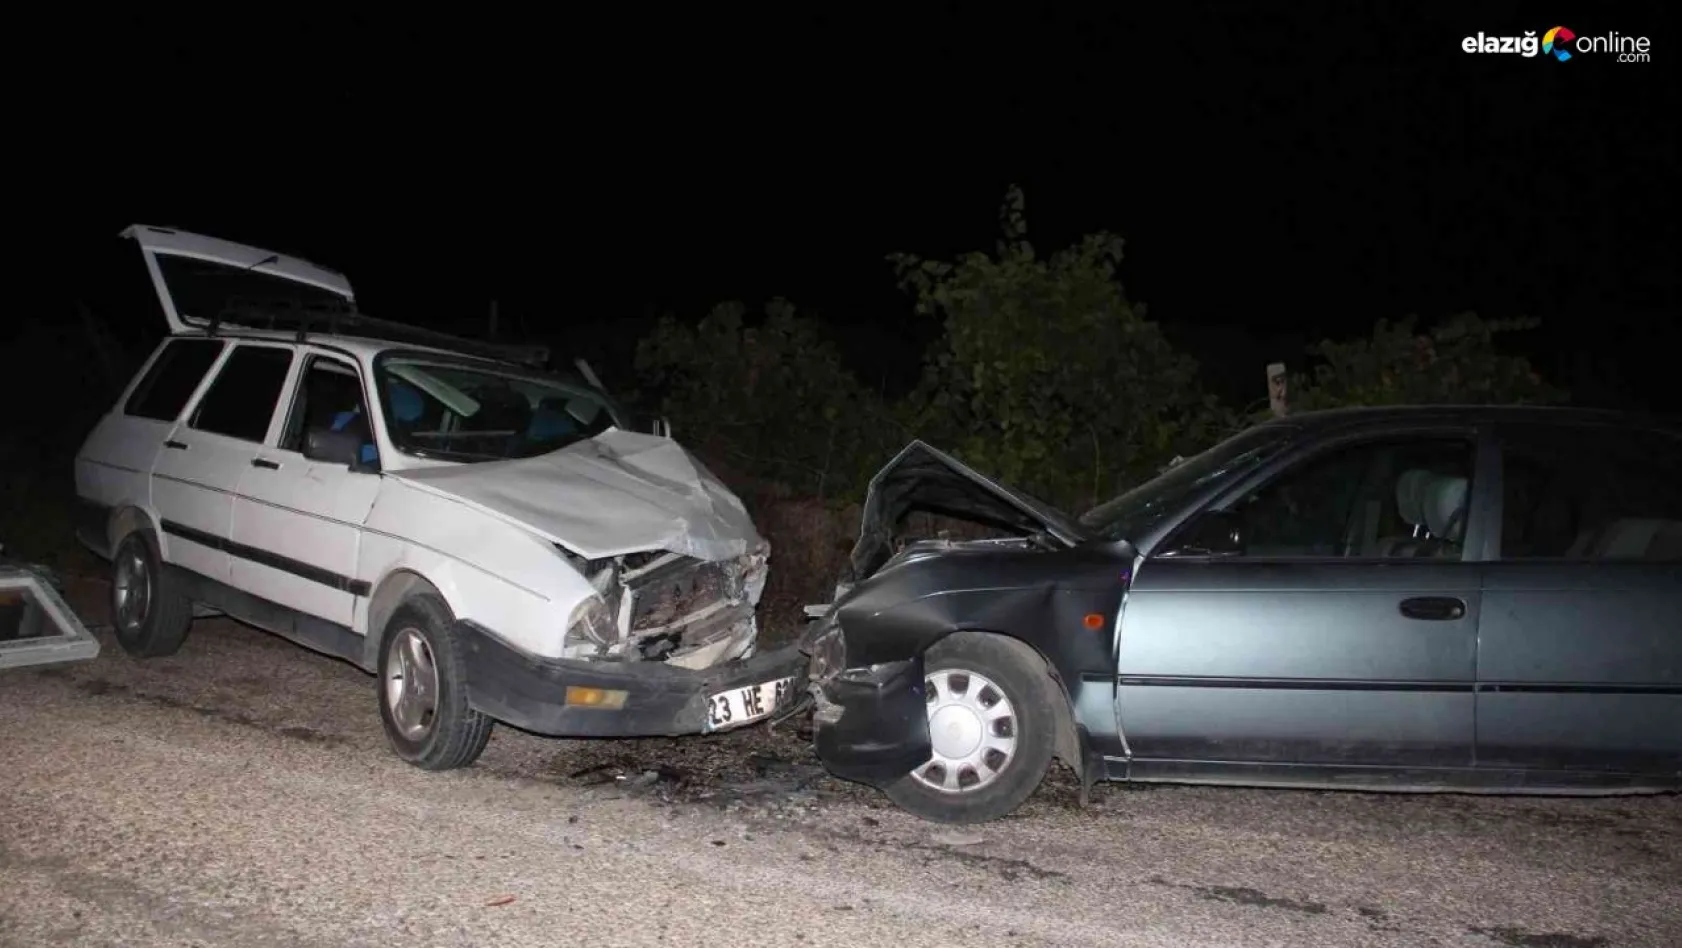 Elazığ'da gece yarısı kaza! İki otomobil kafa kafaya çarpıştı: 5 yaralı